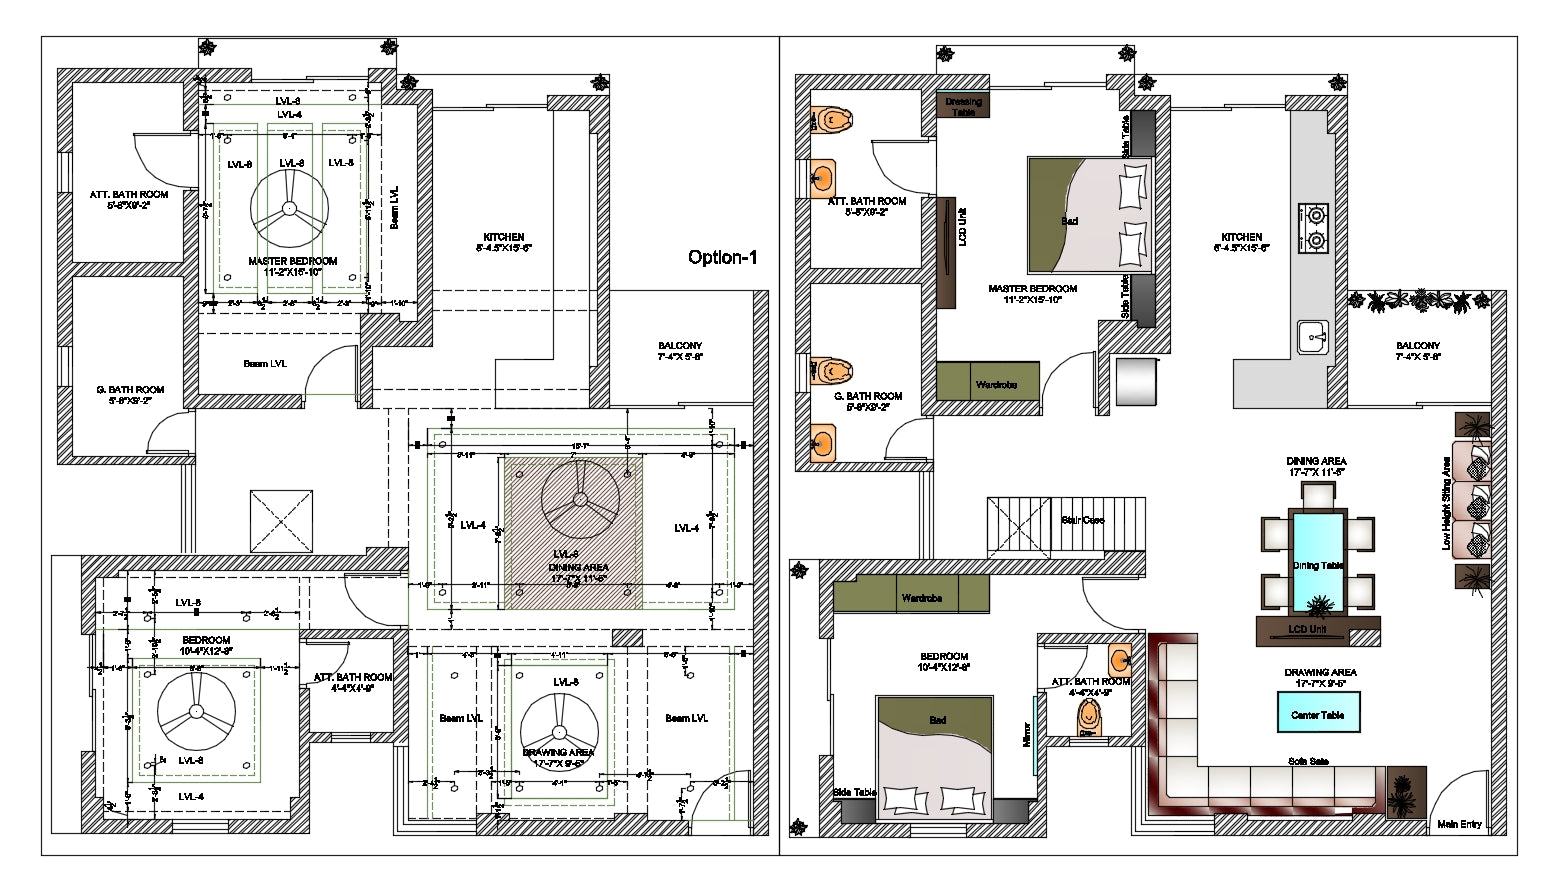 Apartment interiors detail